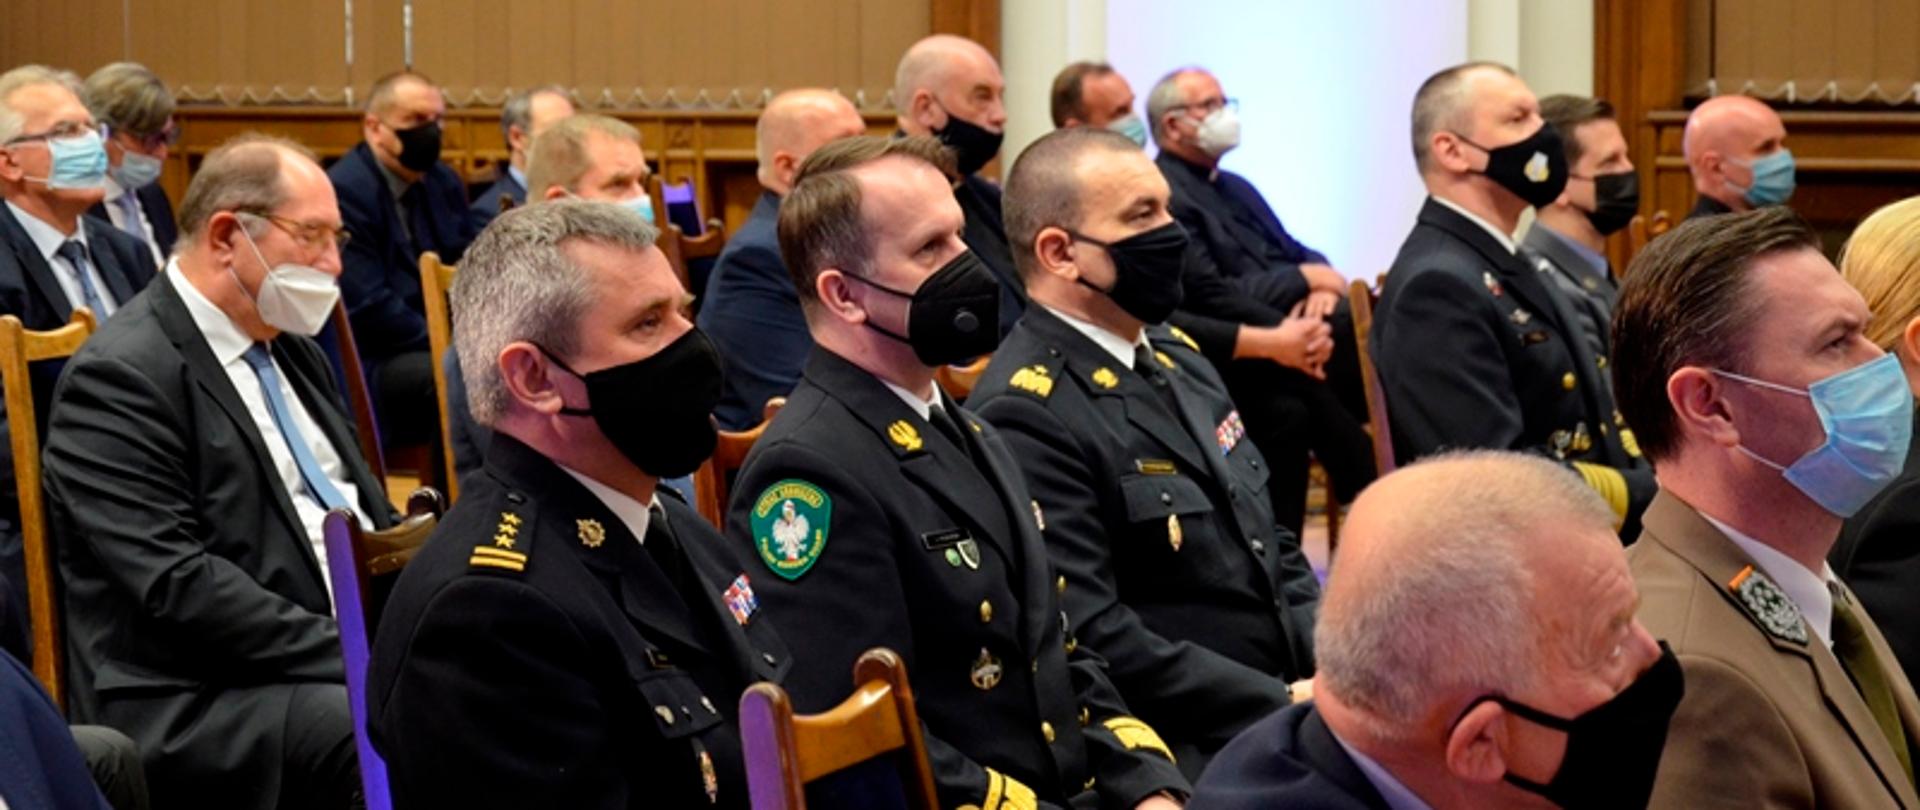 Pomorski komendant wojewódzki Państwowej Straży Pożarnej oraz zaproszeni goście siedzą na spotkaniu konwentu.